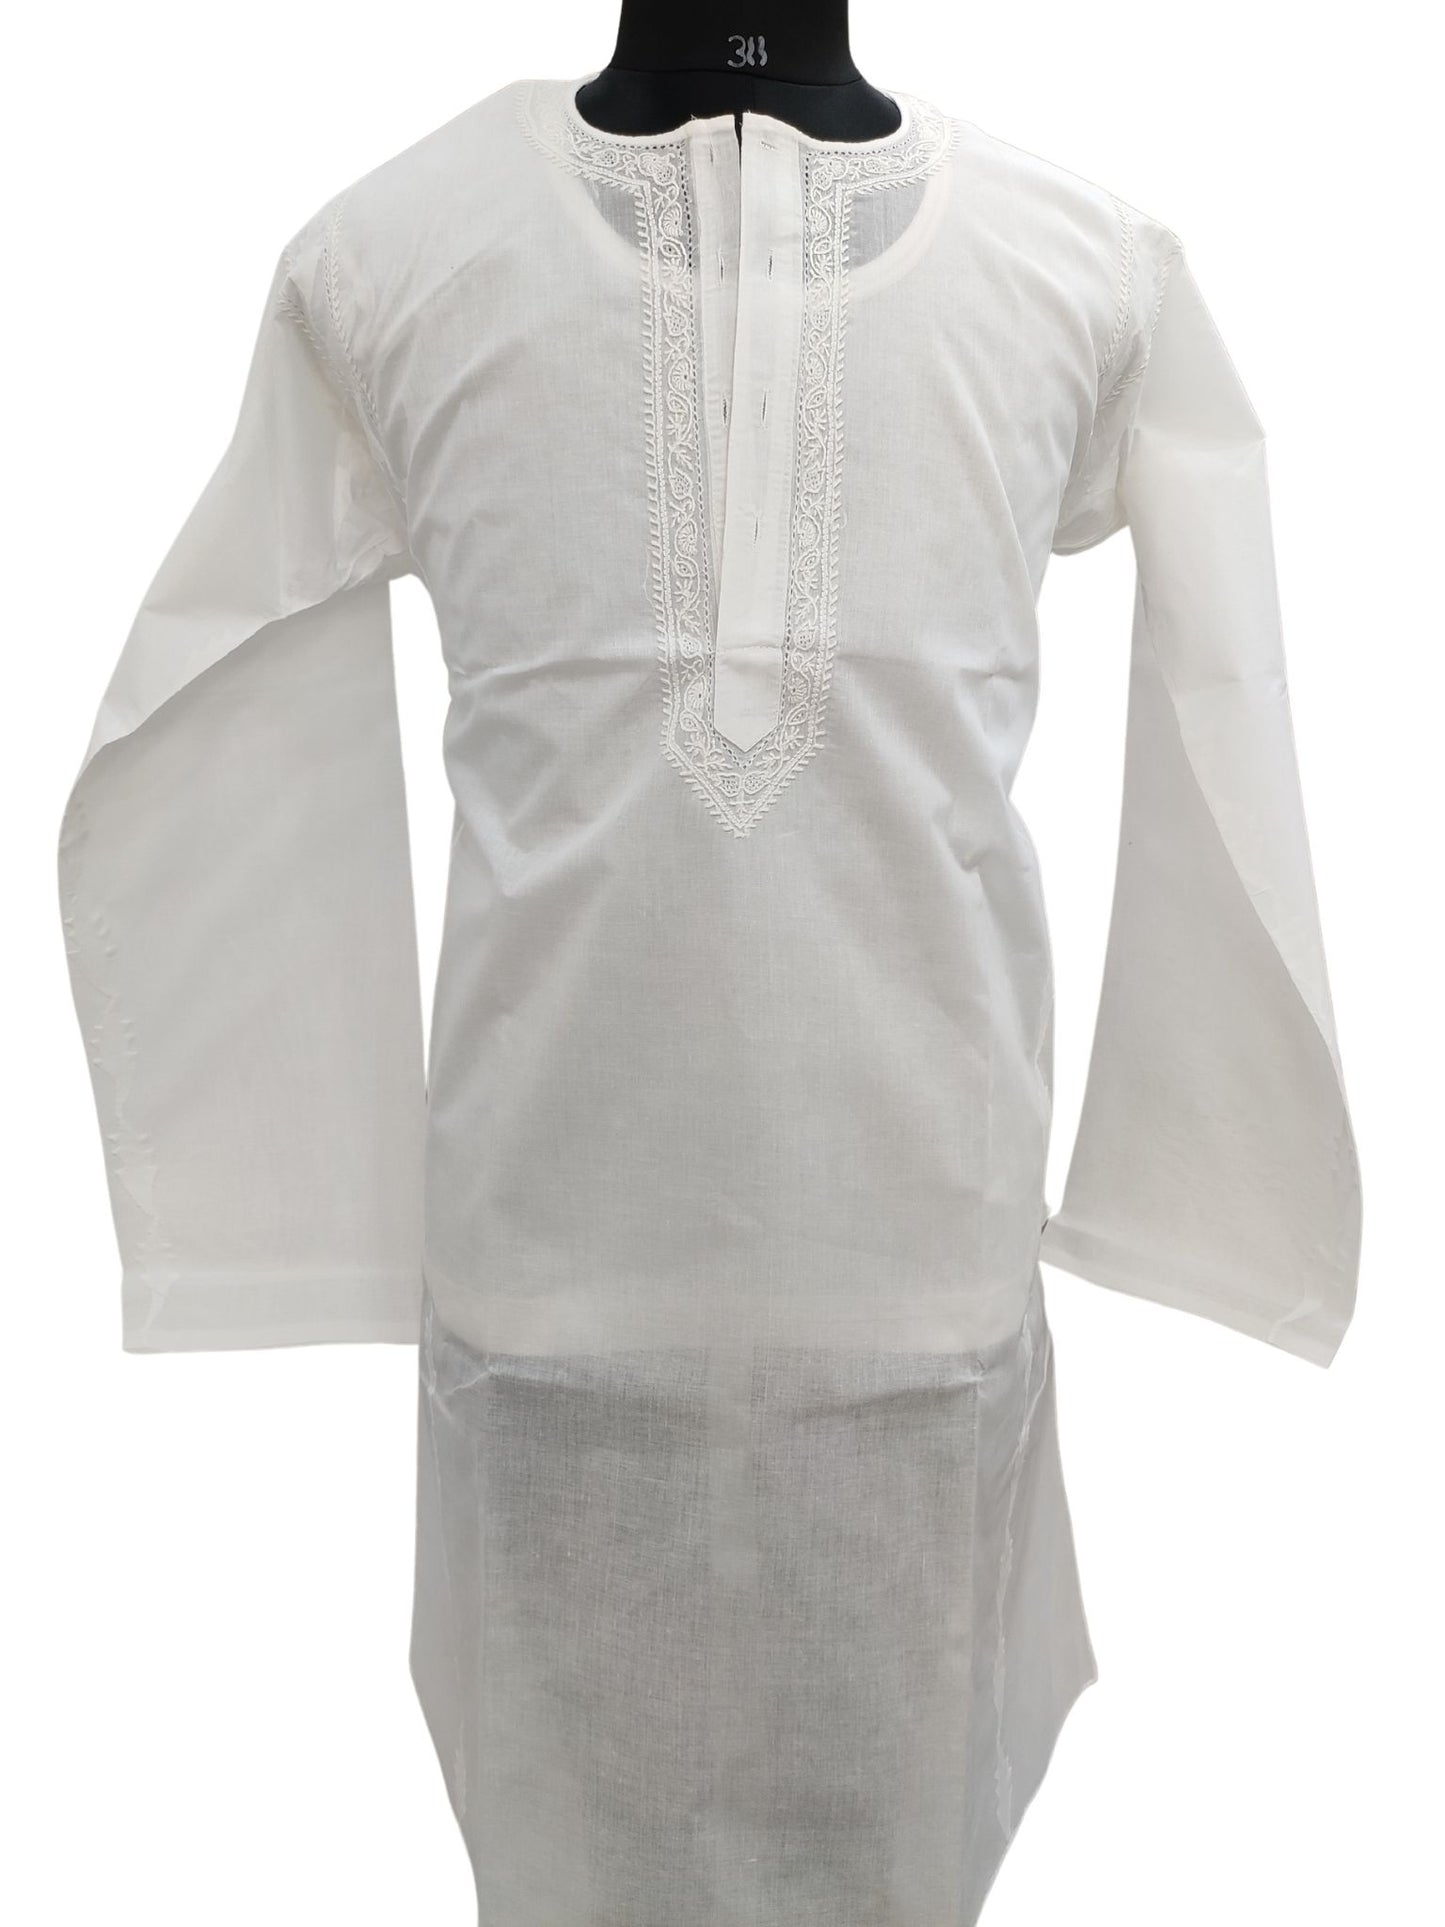 Shyamal Chikan Hand Embroidered White Cotton Lucknowi Chikankari Men's Kurta With Daraz Work – S15527